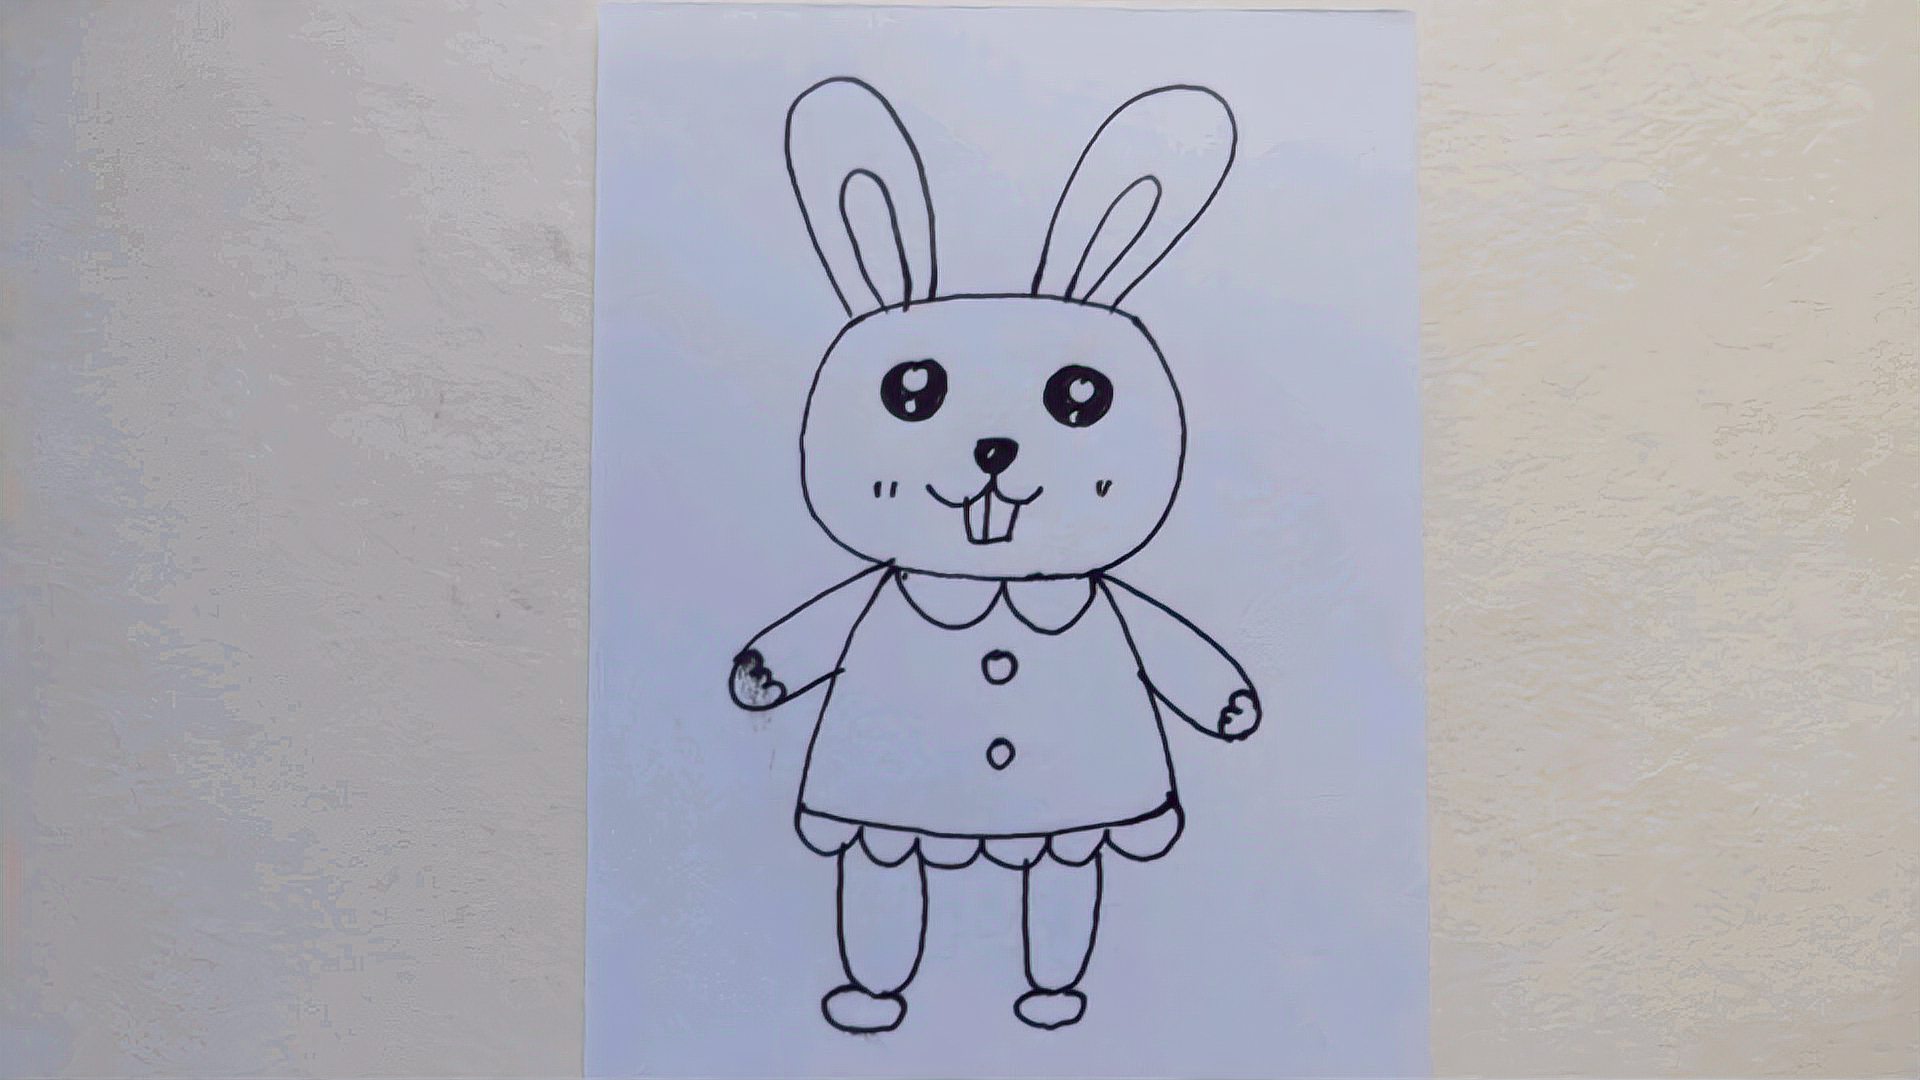 可爱小兔子,巧手画一画